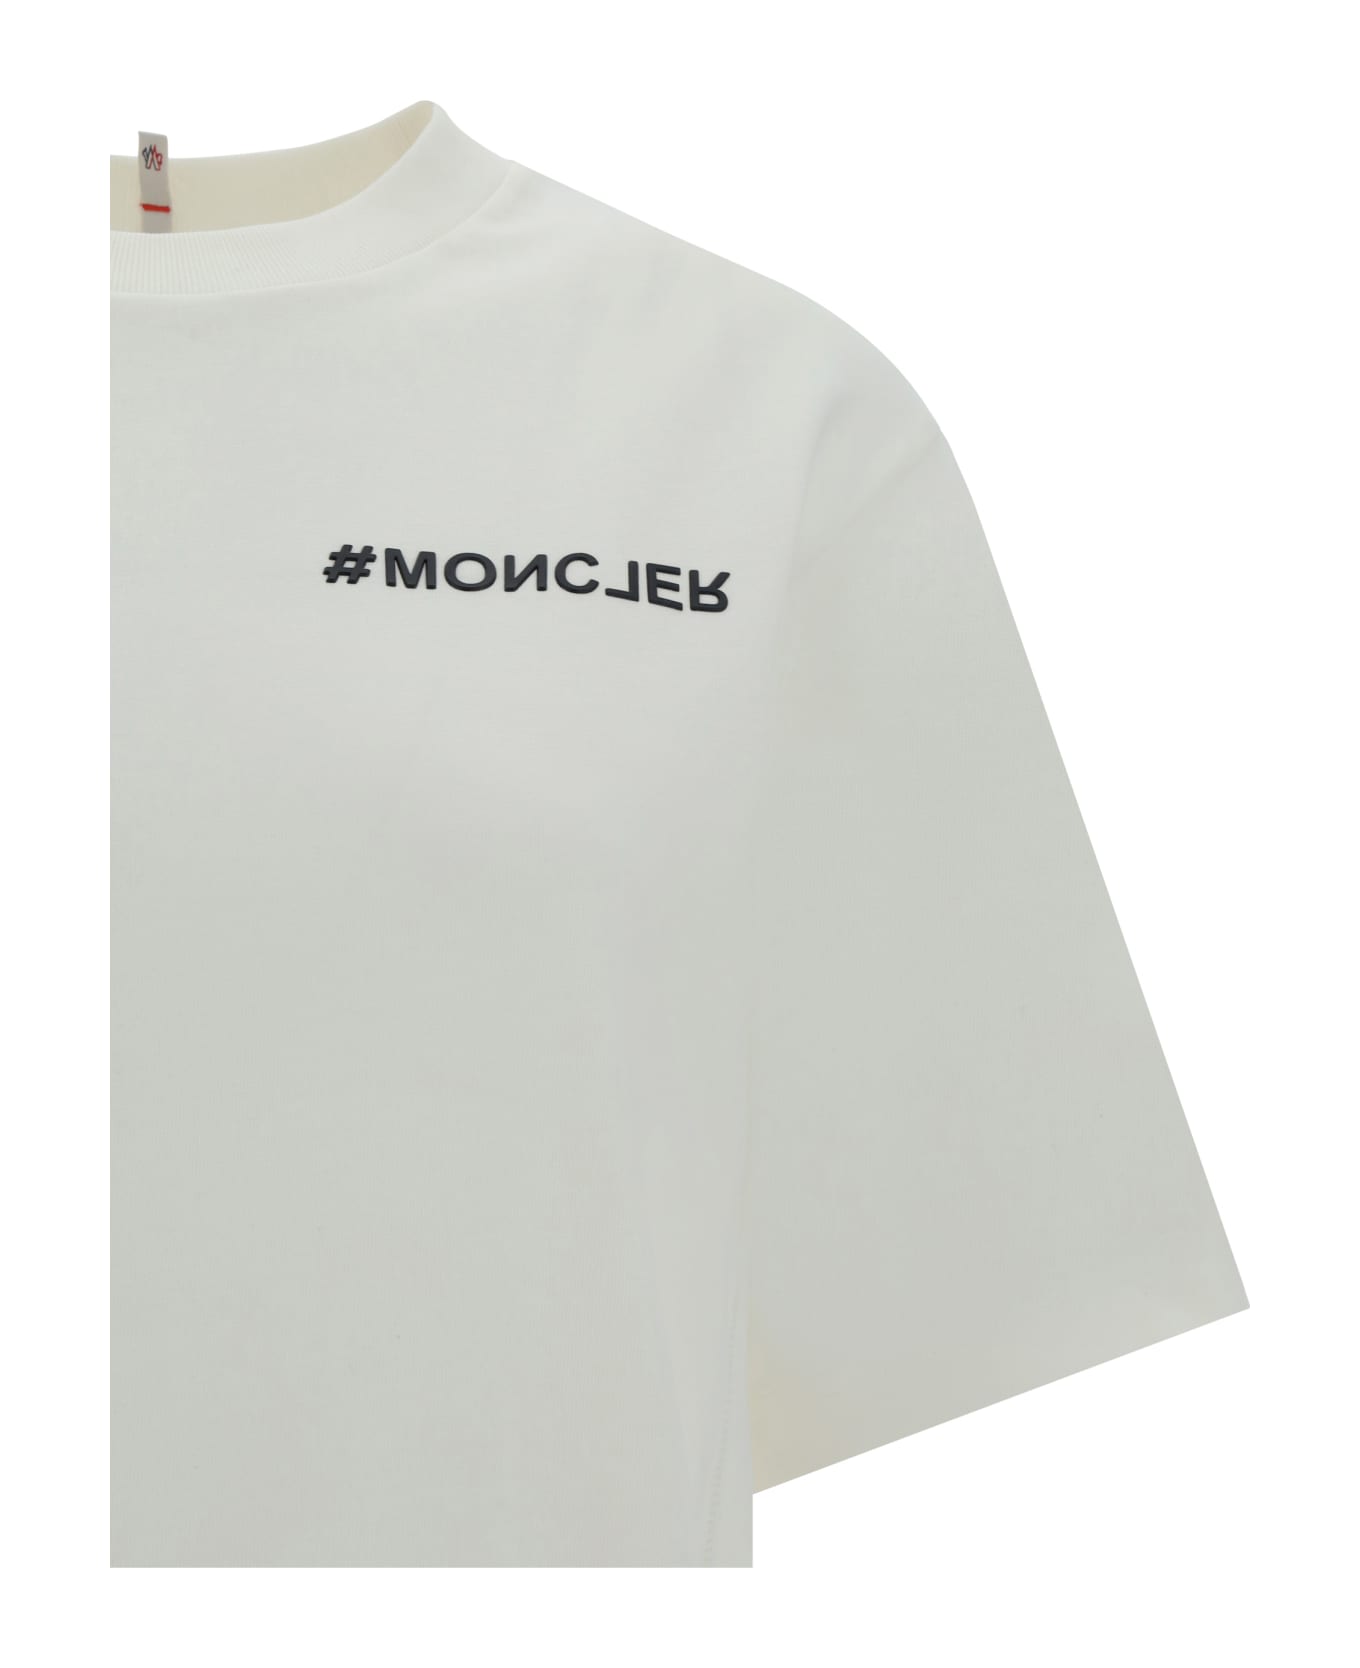 Moncler Grenoble T-shirt - 041 Tシャツ